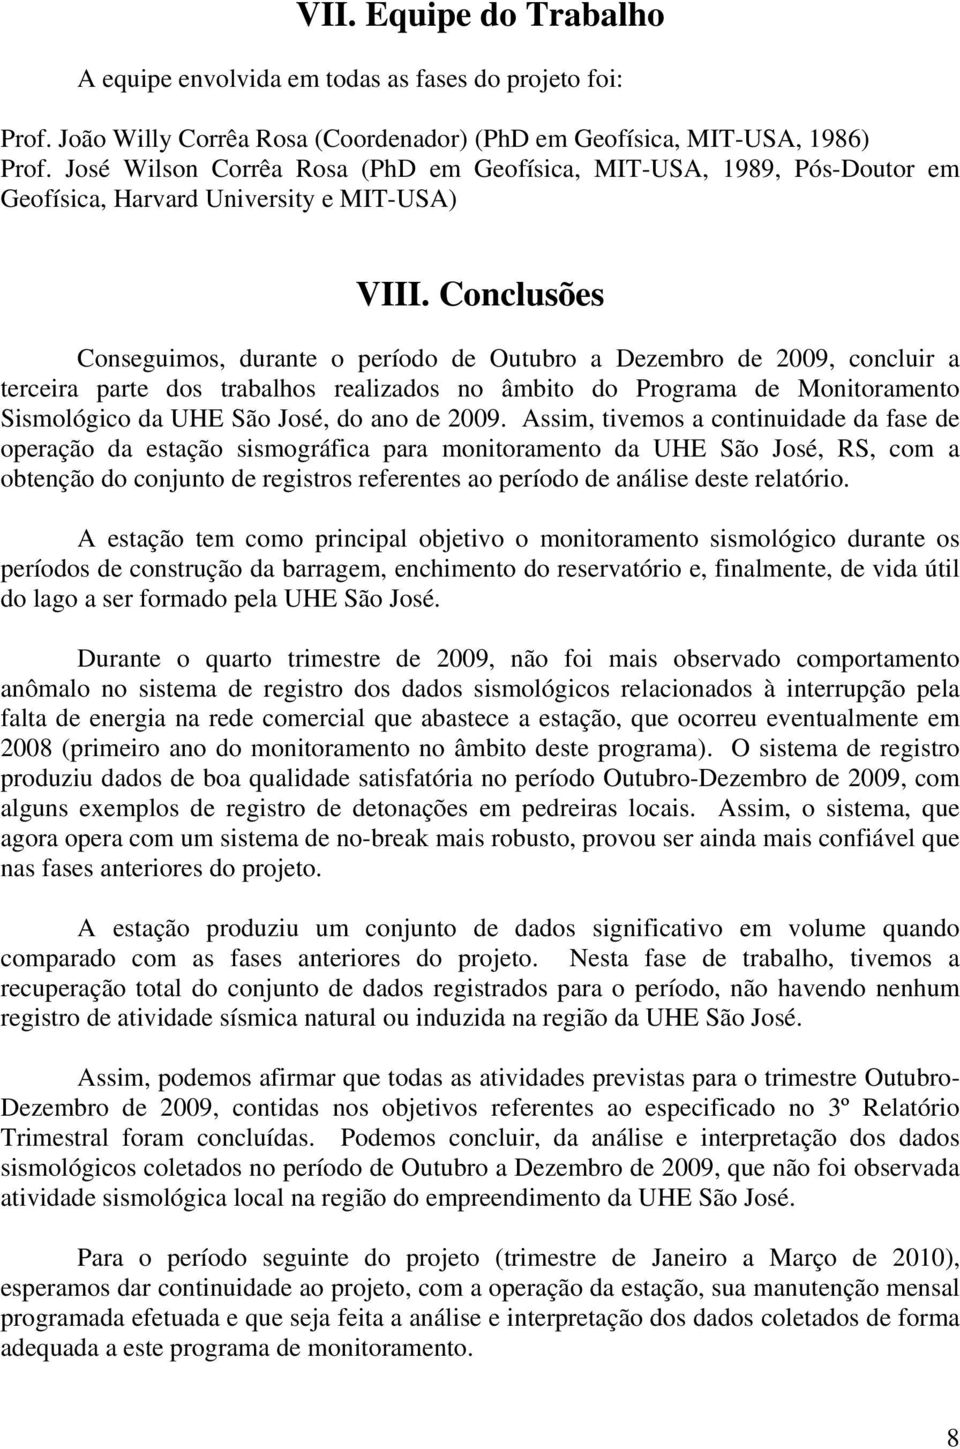 Conclusões Conseguimos, durante o período de Outubro a Dezembro de 2009, concluir a terceira parte dos trabalhos realizados no âmbito do Programa de Monitoramento Sismológico da UHE São José, do ano